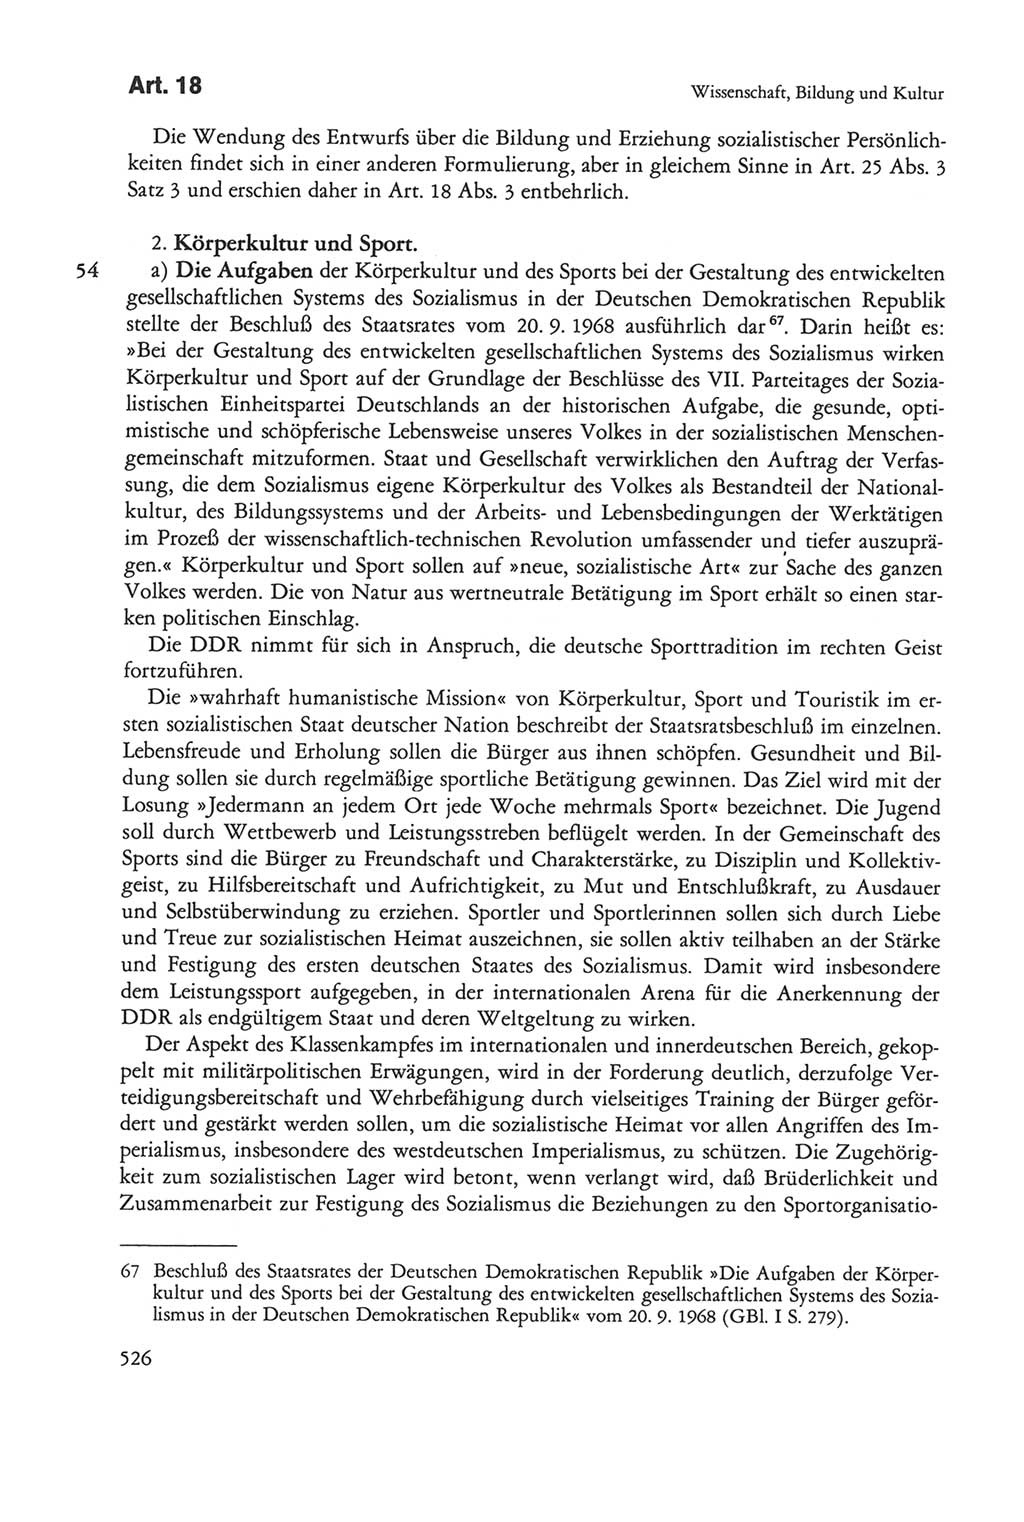 Die sozialistische Verfassung der Deutschen Demokratischen Republik (DDR), Kommentar mit einem Nachtrag 1997, Seite 526 (Soz. Verf. DDR Komm. Nachtr. 1997, S. 526)